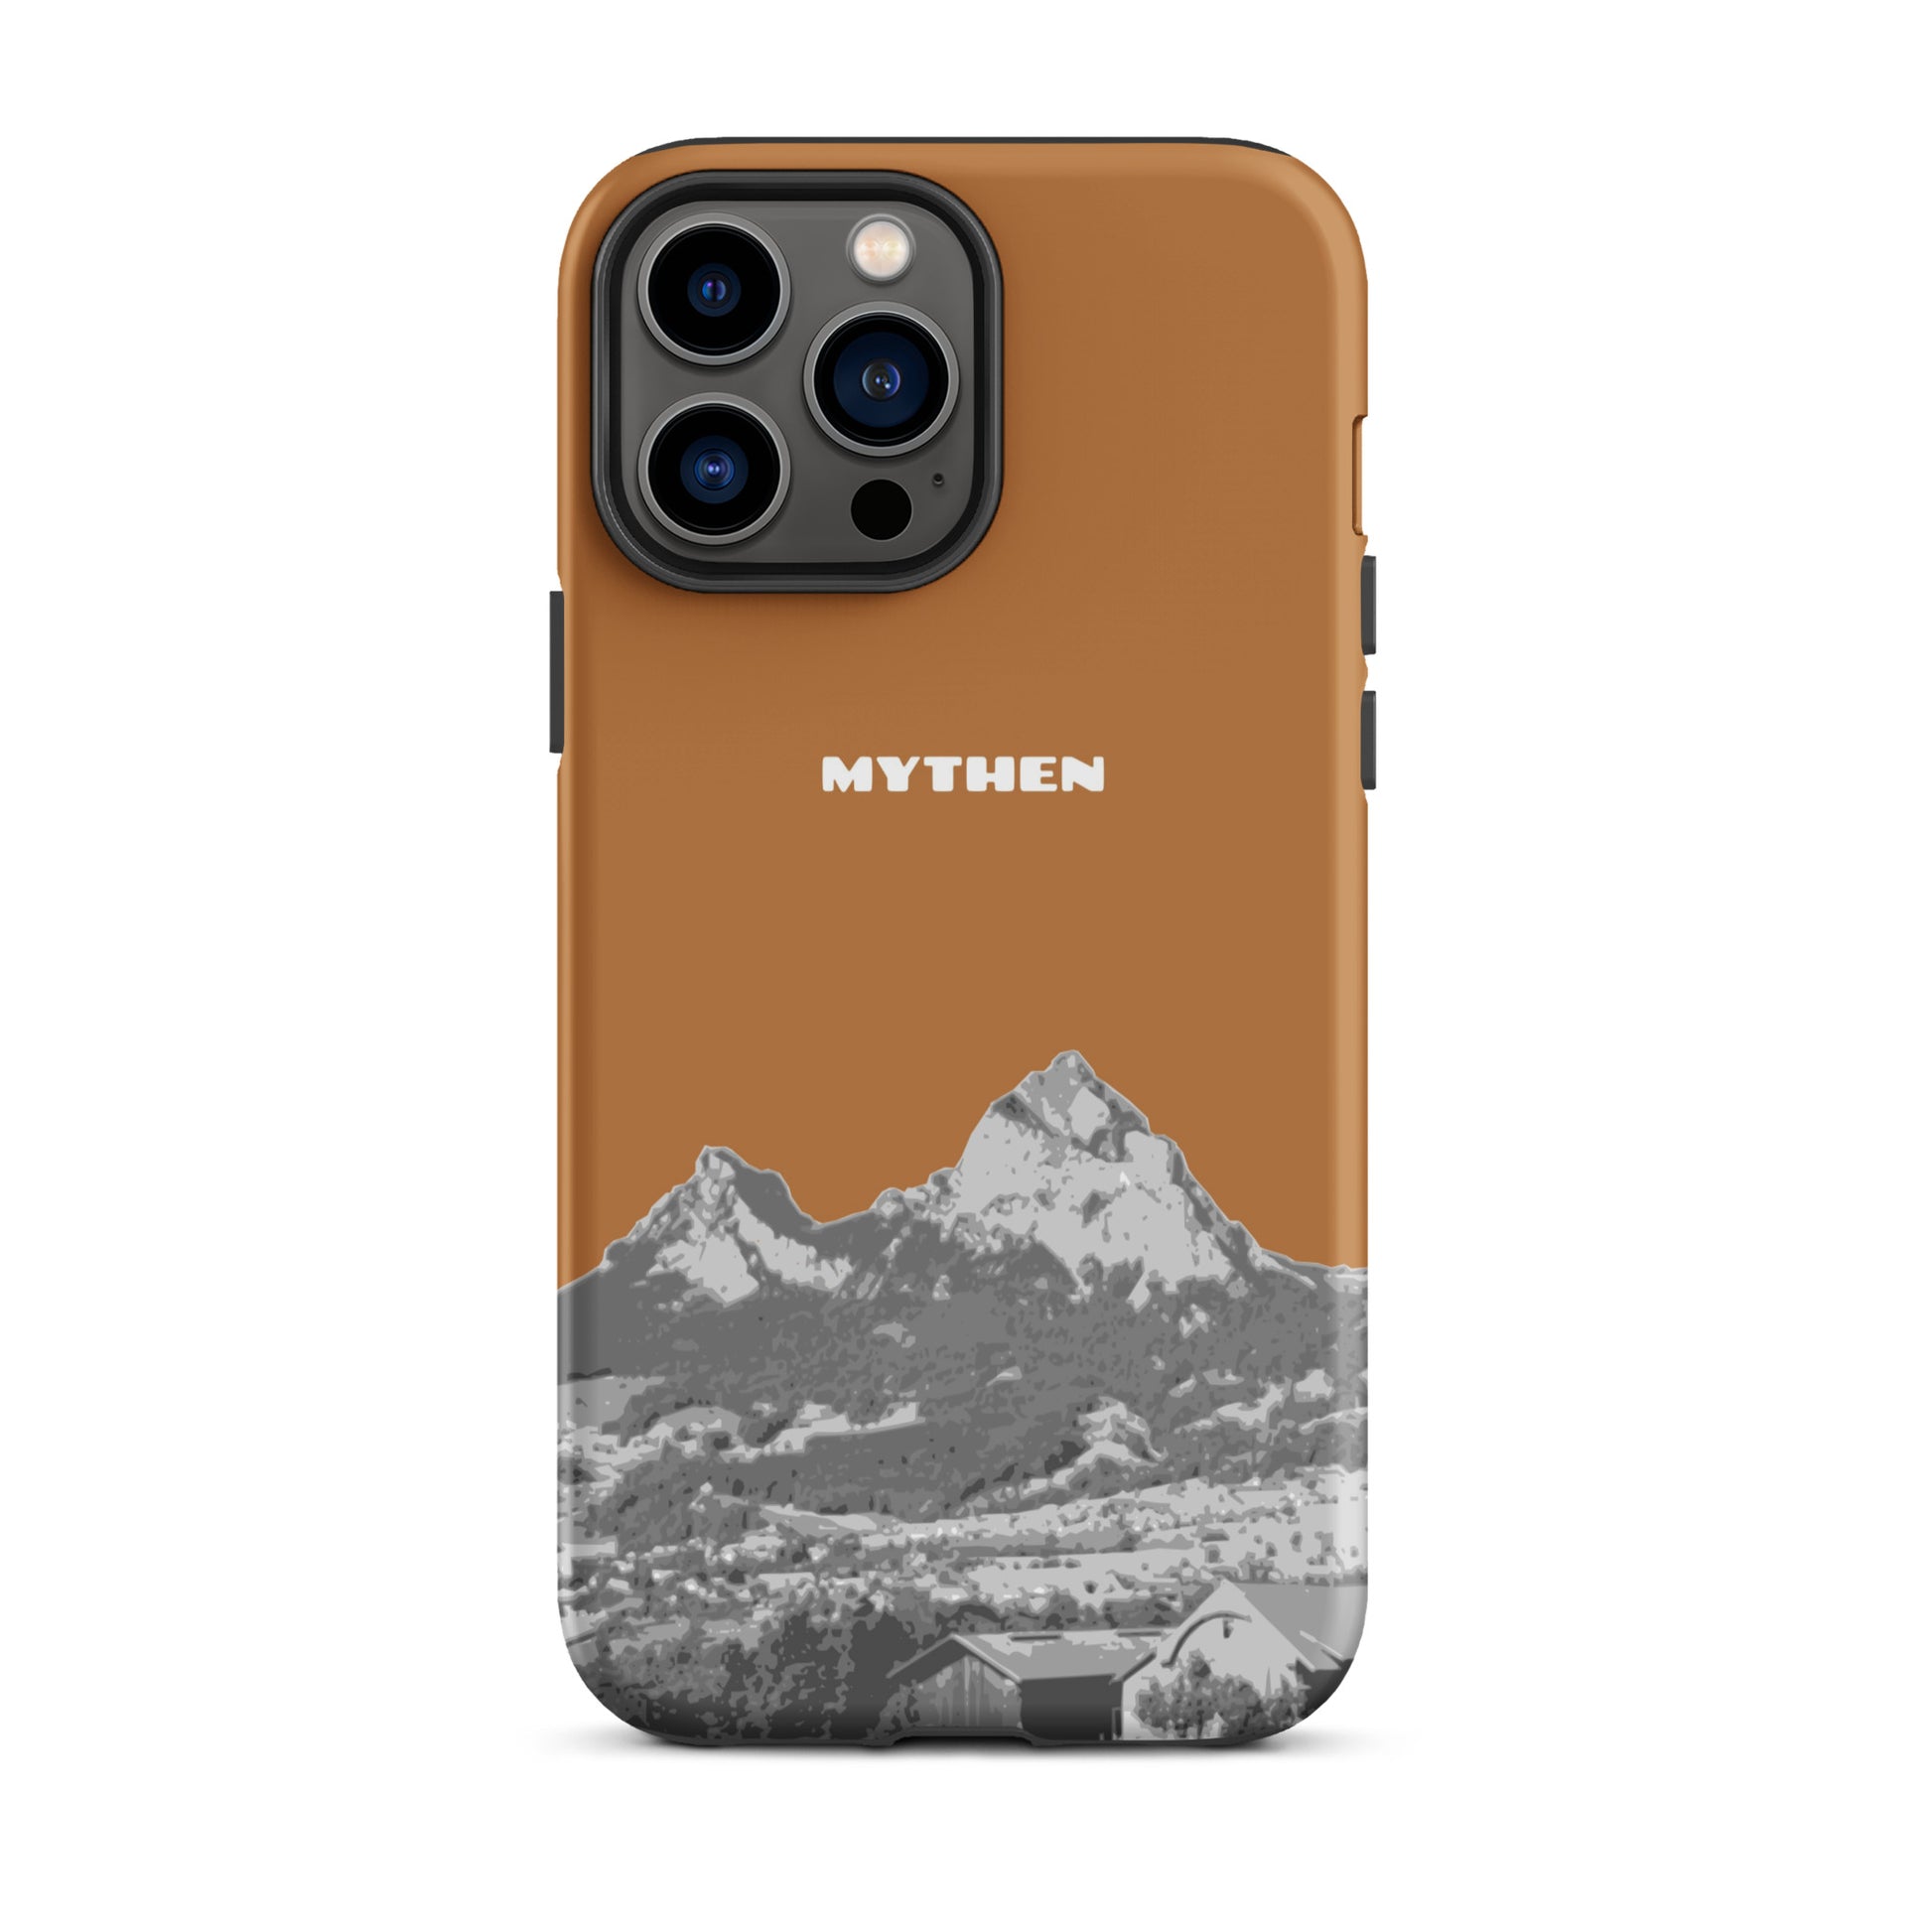 Hülle für das iPhone 13 Pro Max von Apple in der Farbe Kupfer, dass den Grossen Mythen und den Kleinen Mythen bei Schwyz zeigt. 